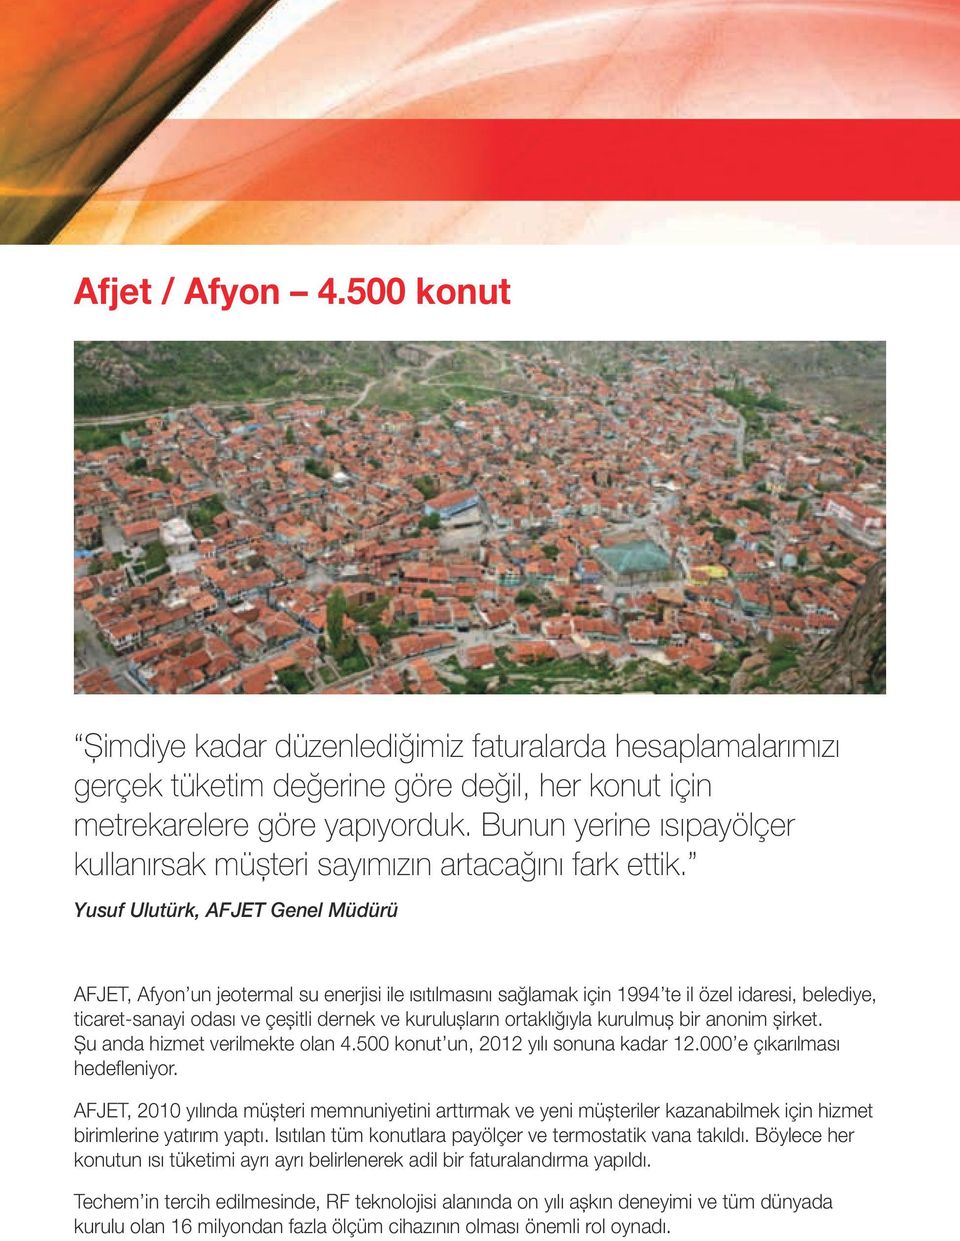 Yusuf Ulutürk, AFJET Genel Müdürü AFJET, Afyon un jeotermal su enerjisi ile ısıtılmasını sağlamak için 1994 te il özel idaresi, belediye, ticaret-sanayi odası ve çeşitli dernek ve kuruluşların